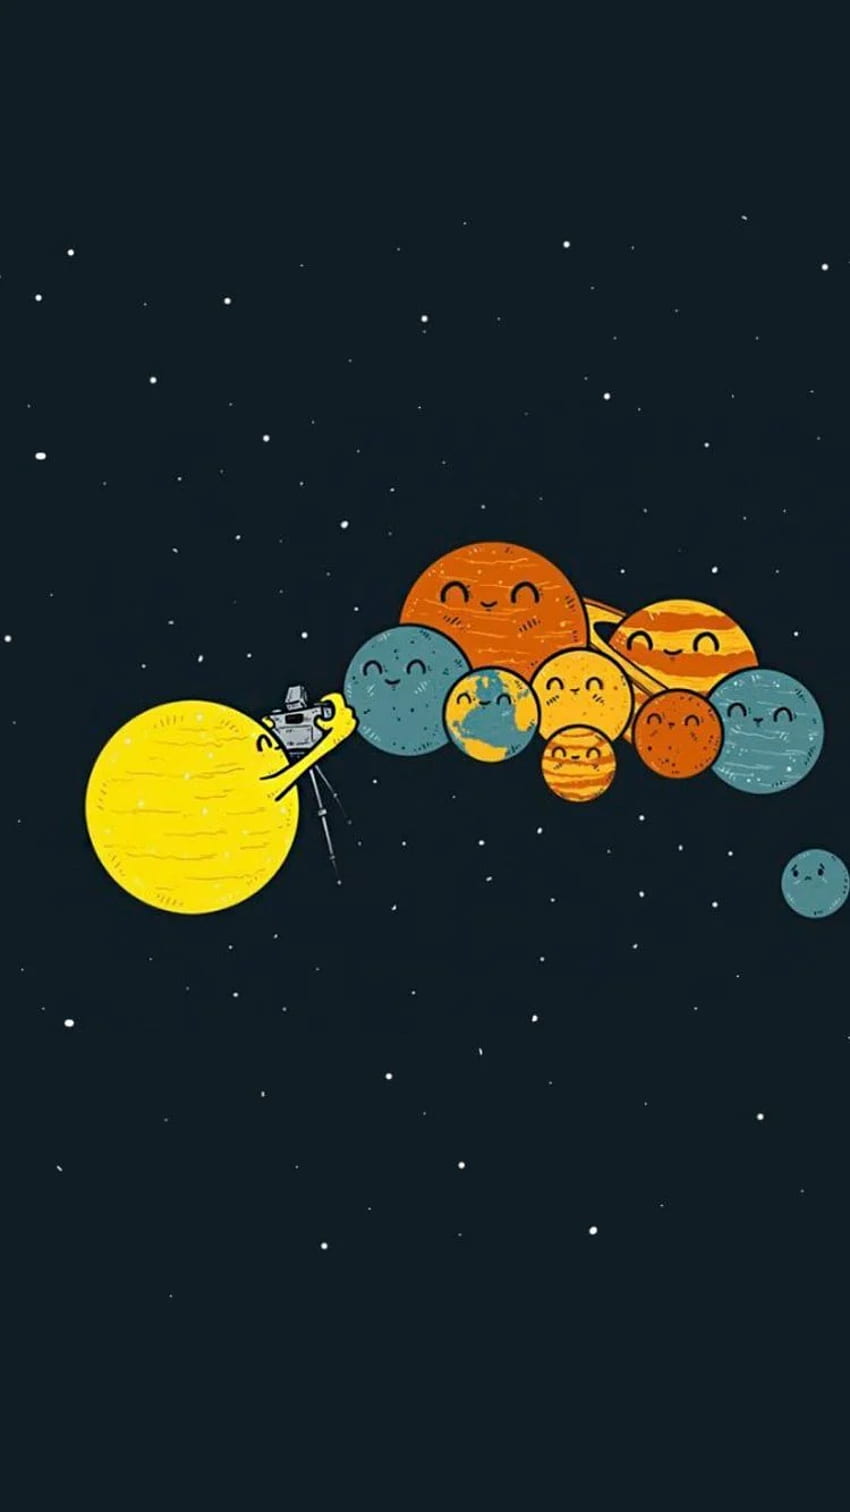 Sun And Planets Group - Tippen Sie hier, um mehr lustige Homescreens zu sehen, Funny Adult HD-Handy-Hintergrundbild